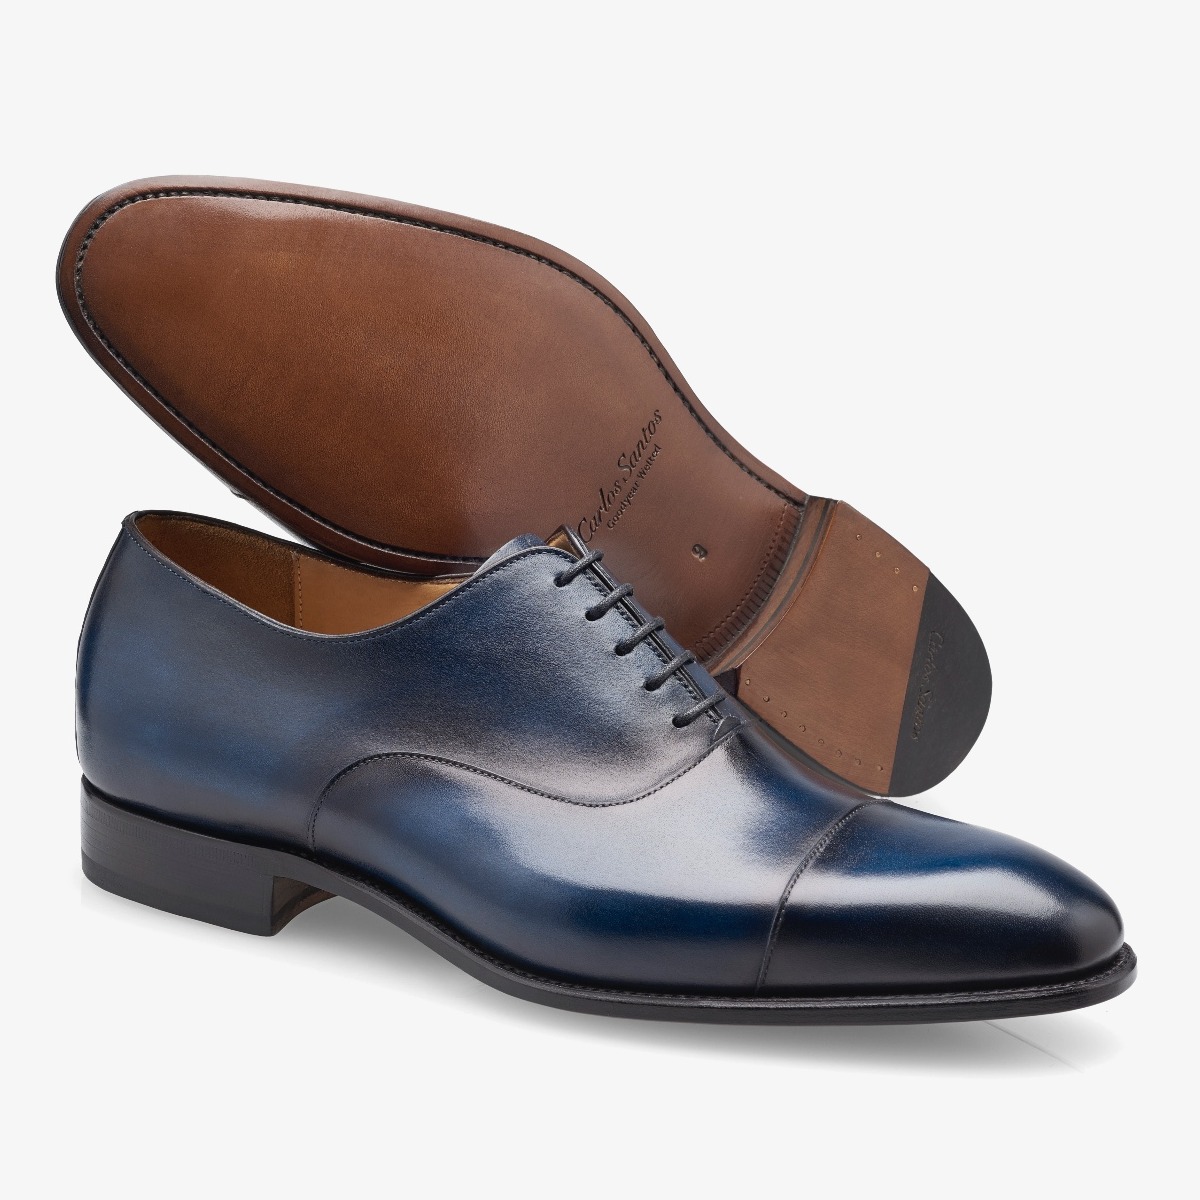 Carlos Santos 8627 Harold blue toe cap men's oxford shoes